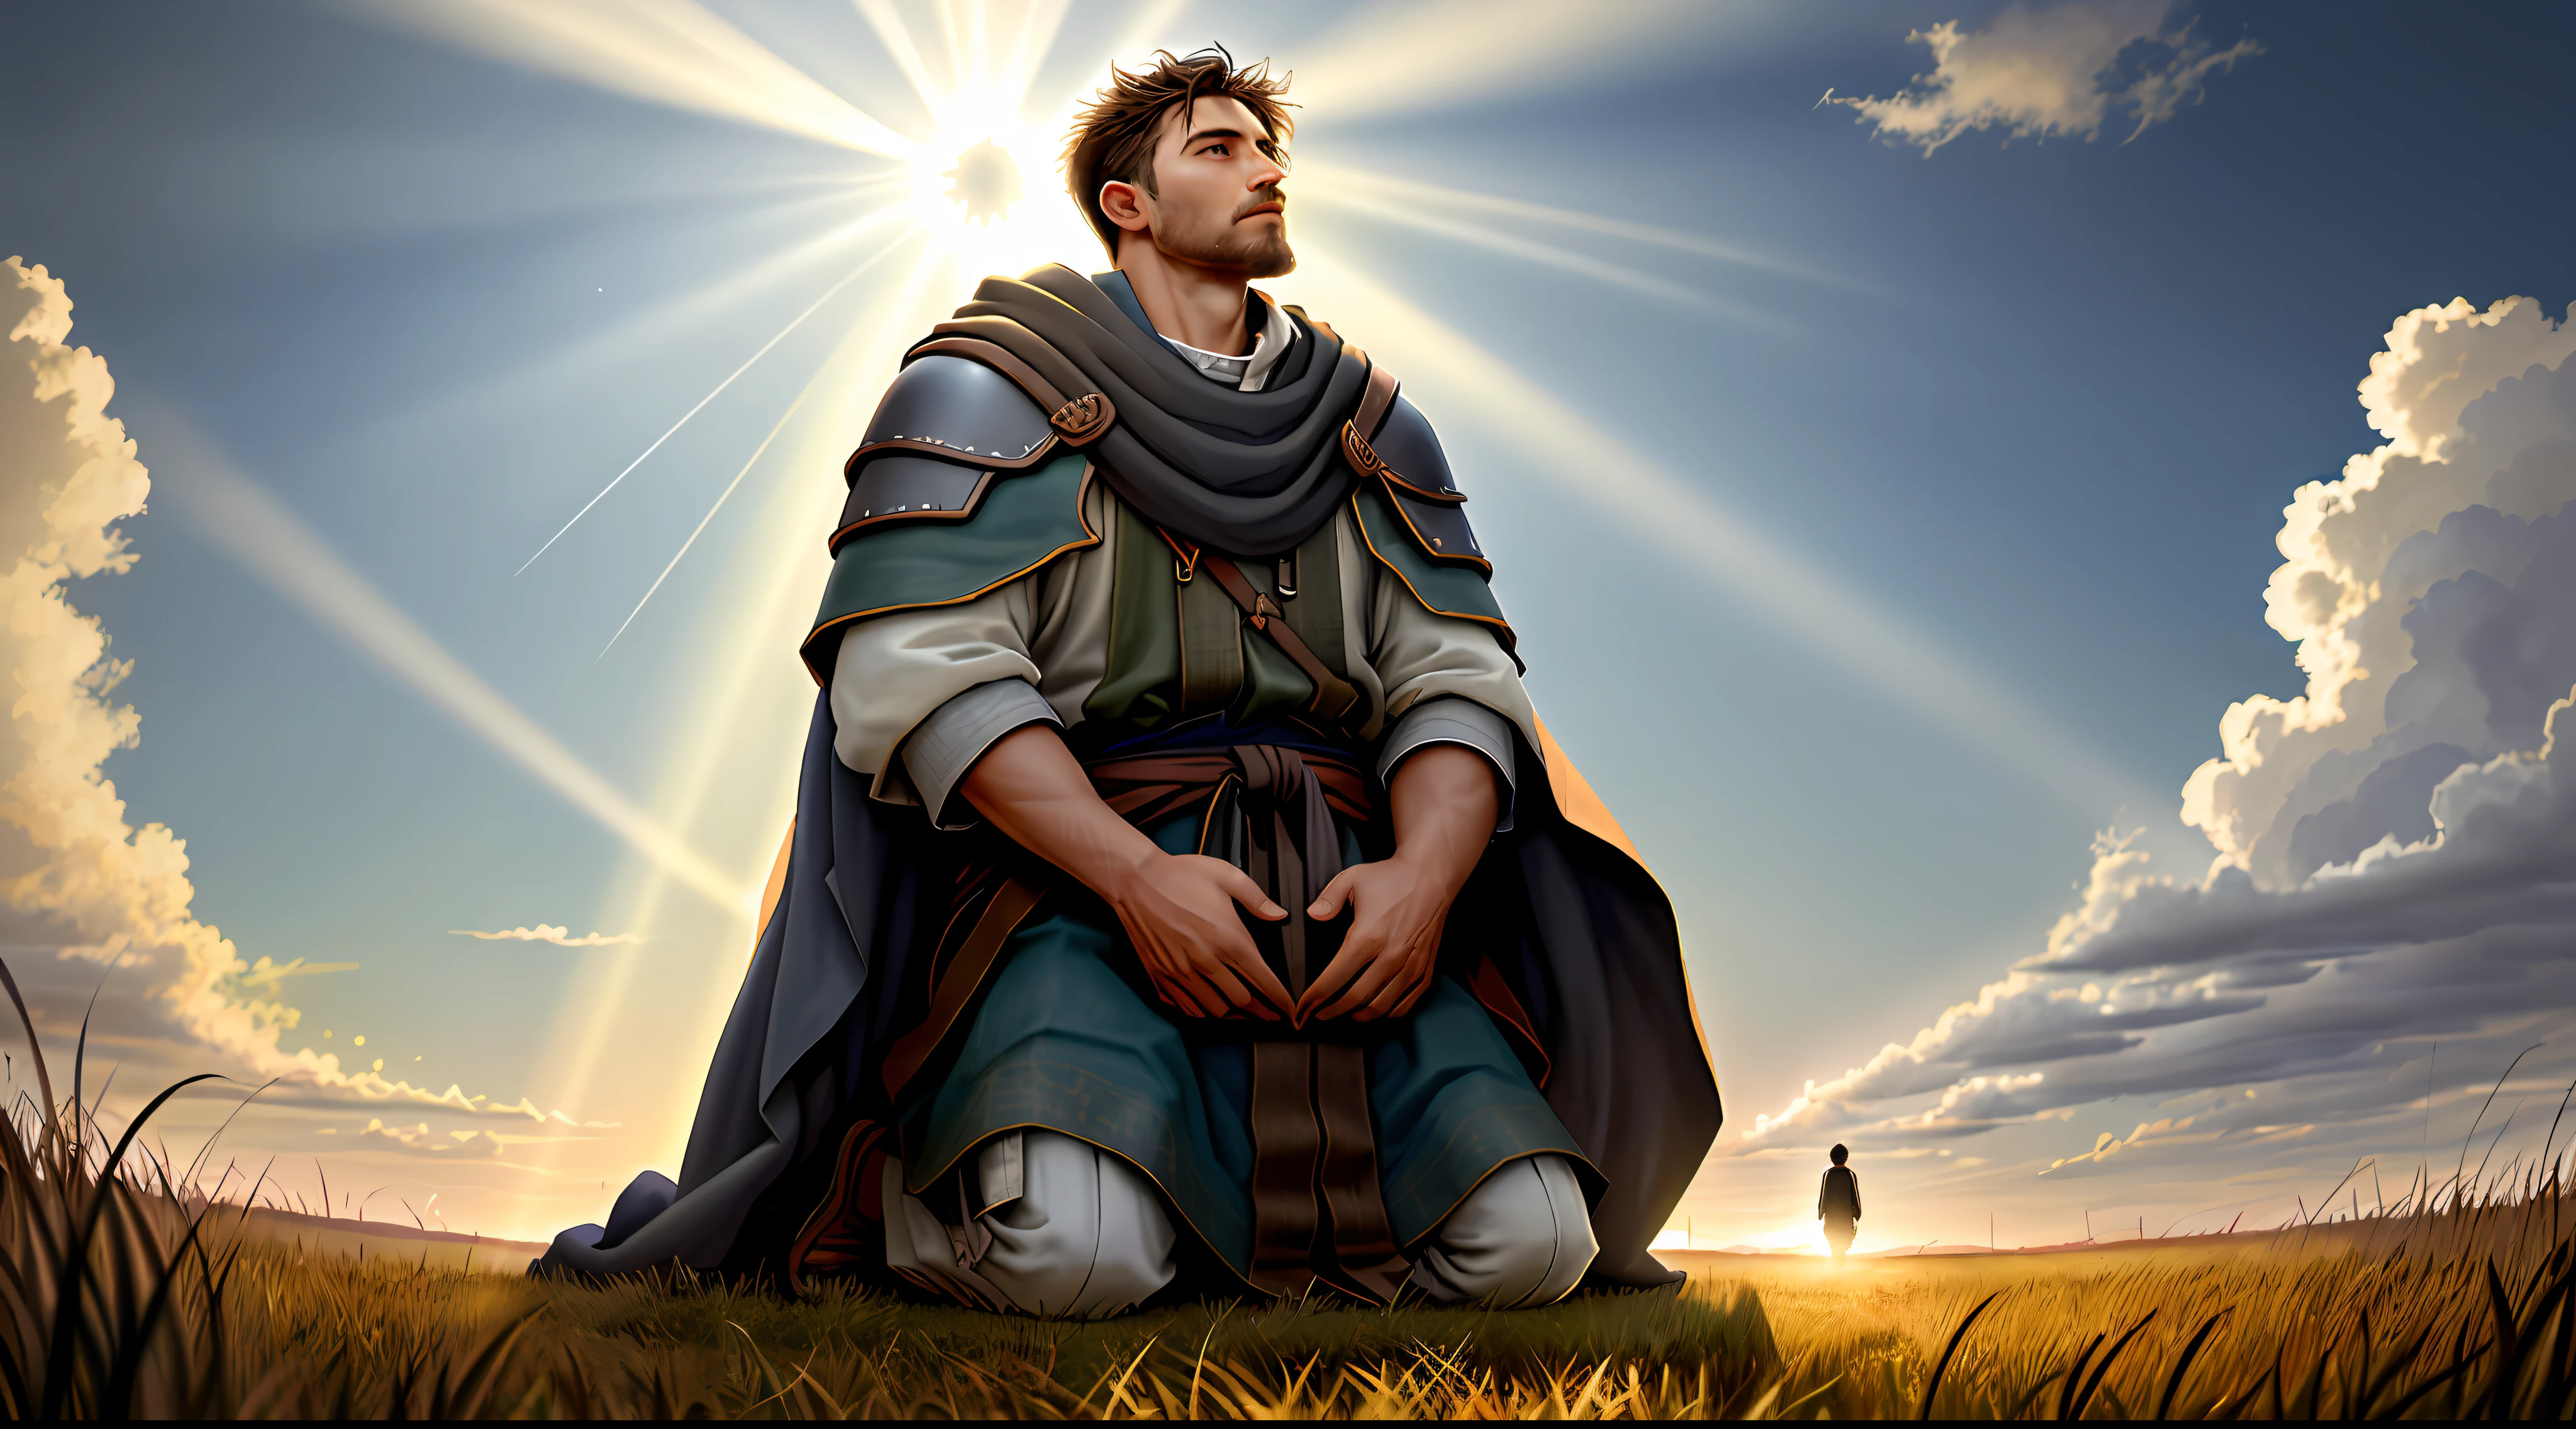 少なくとも40歳のジェイコブが野原でひざまずいている, 空を見上げて, 神の光の光線が彼に降り注ぐ, 旅の途中で神の存在を衣服で伝える, 聖書の時代の特徴と場面, 詳細な顔